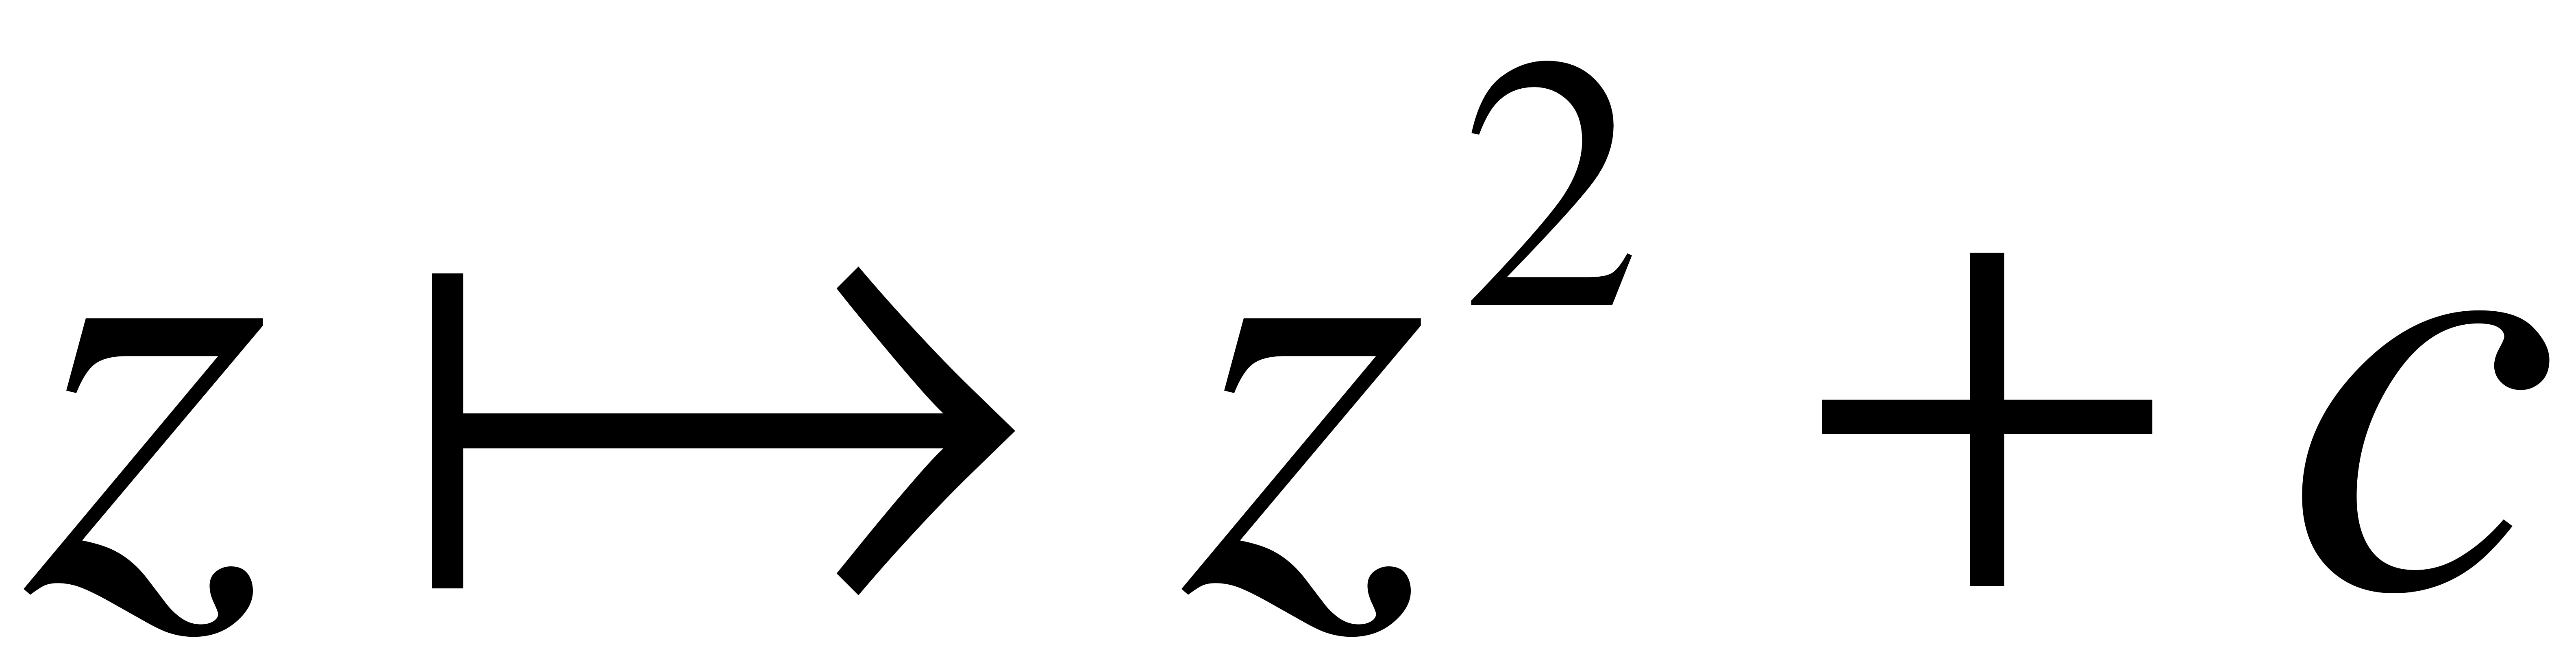 z2+c